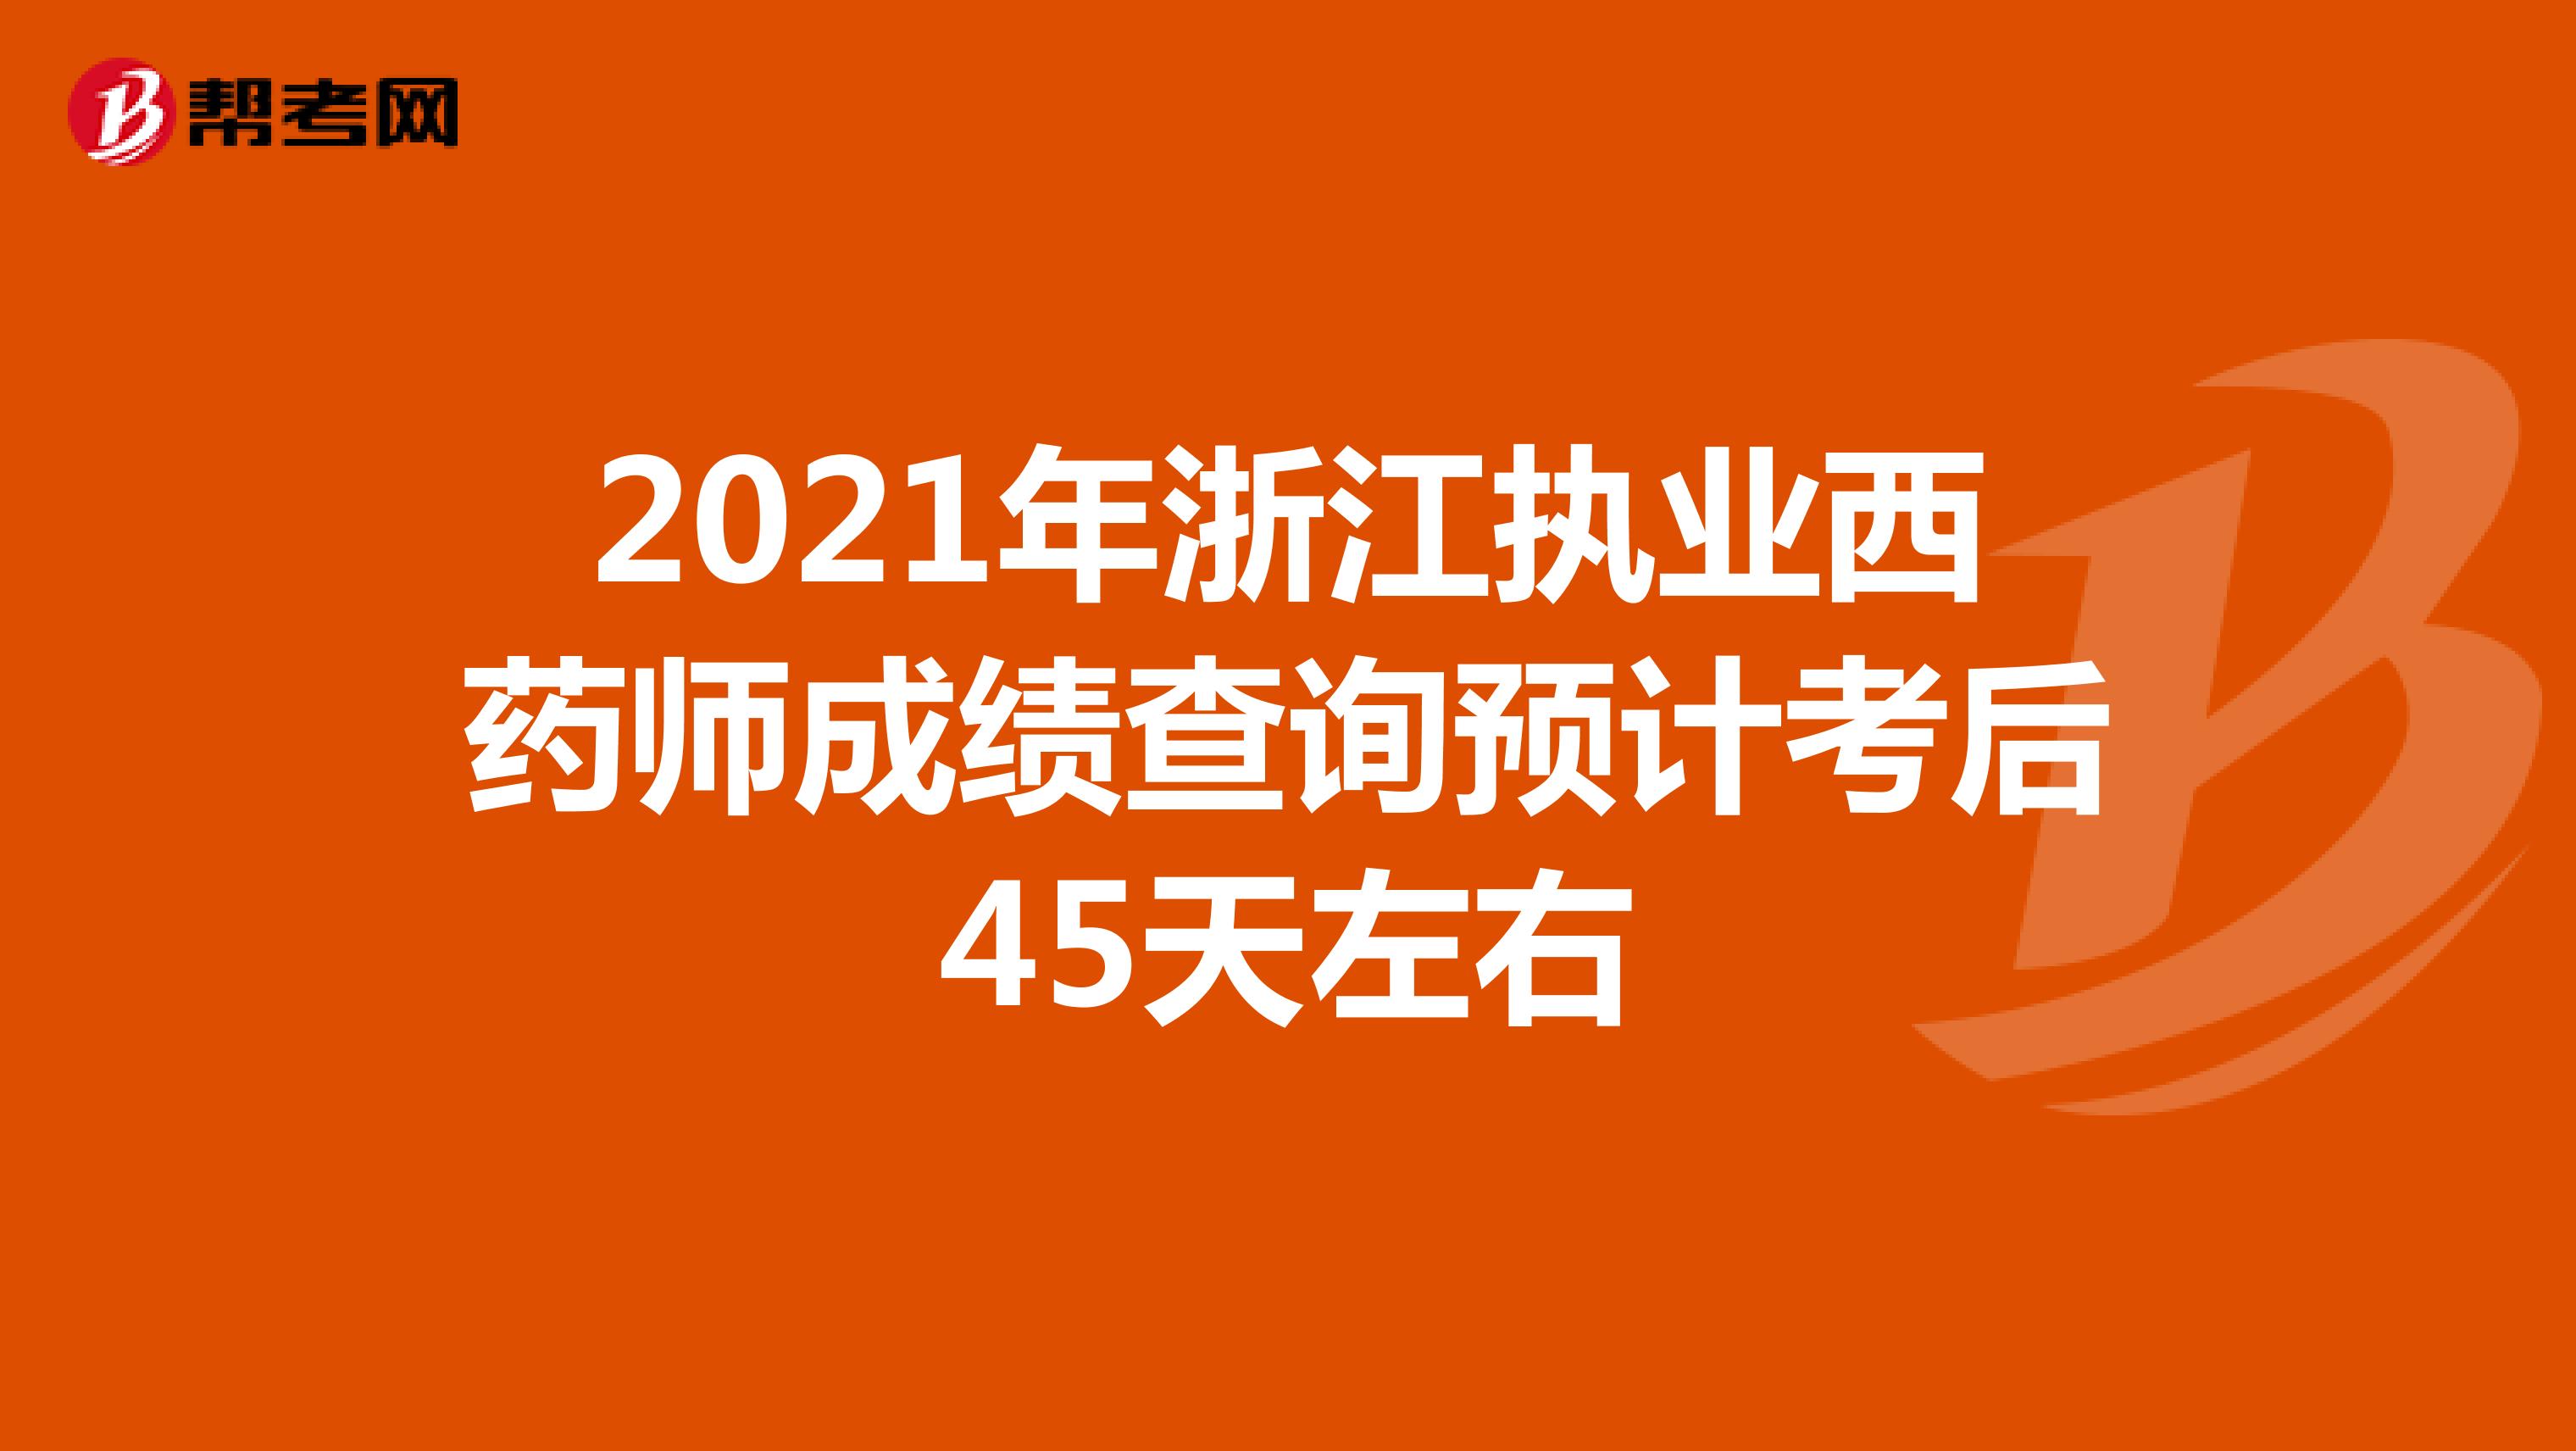 2021年浙江执业西药师成绩查询预计考后45天左右